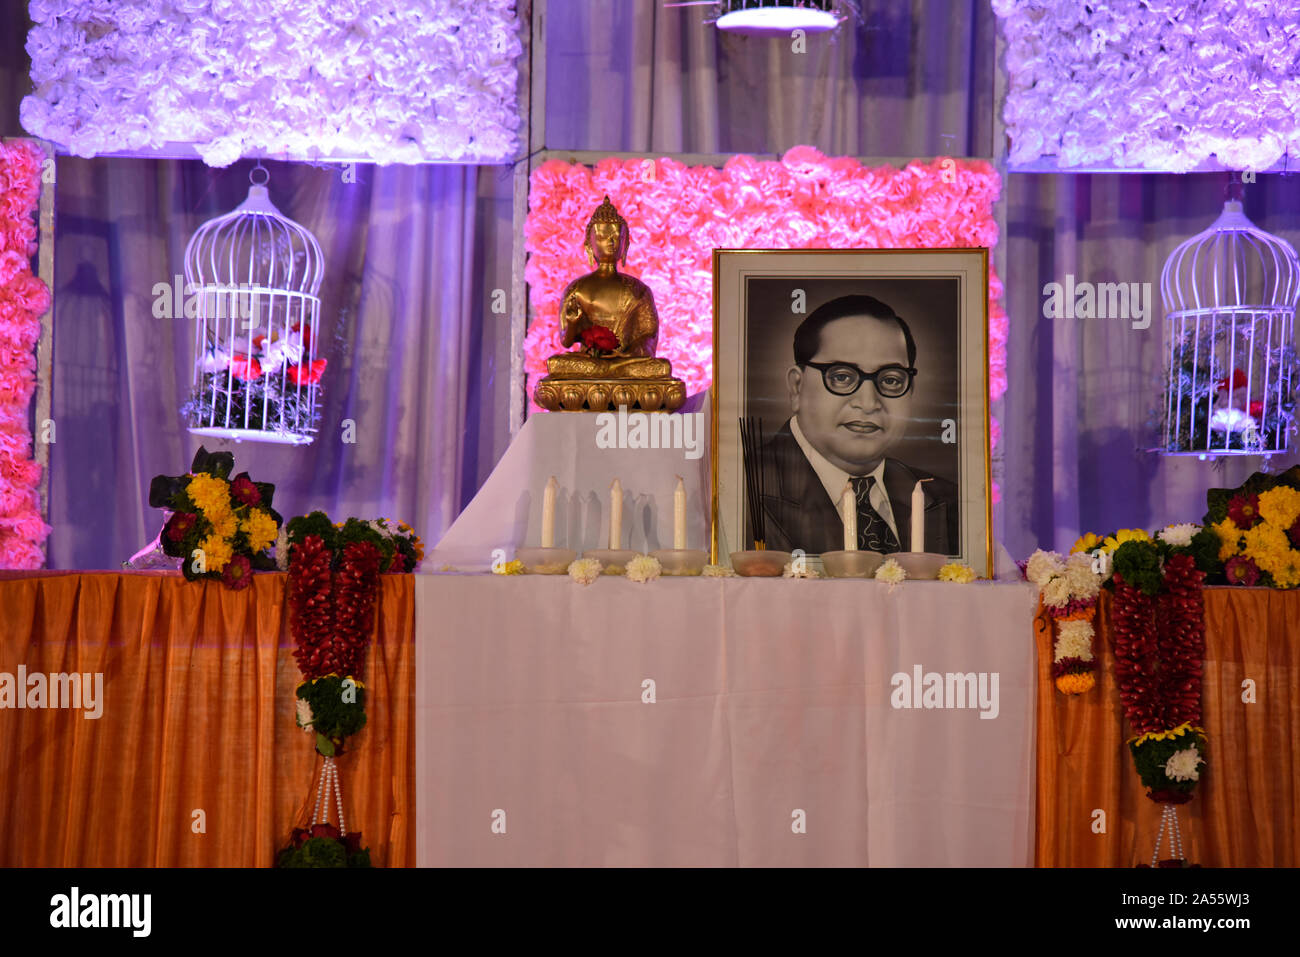 Un idolo del Signore Buddha nella postura di seduta e di un disegno del dottor Babasaheb Ambedkar, visualizzato sul palco durante una cerimonia di nozze, Maharashtra, India Foto Stock